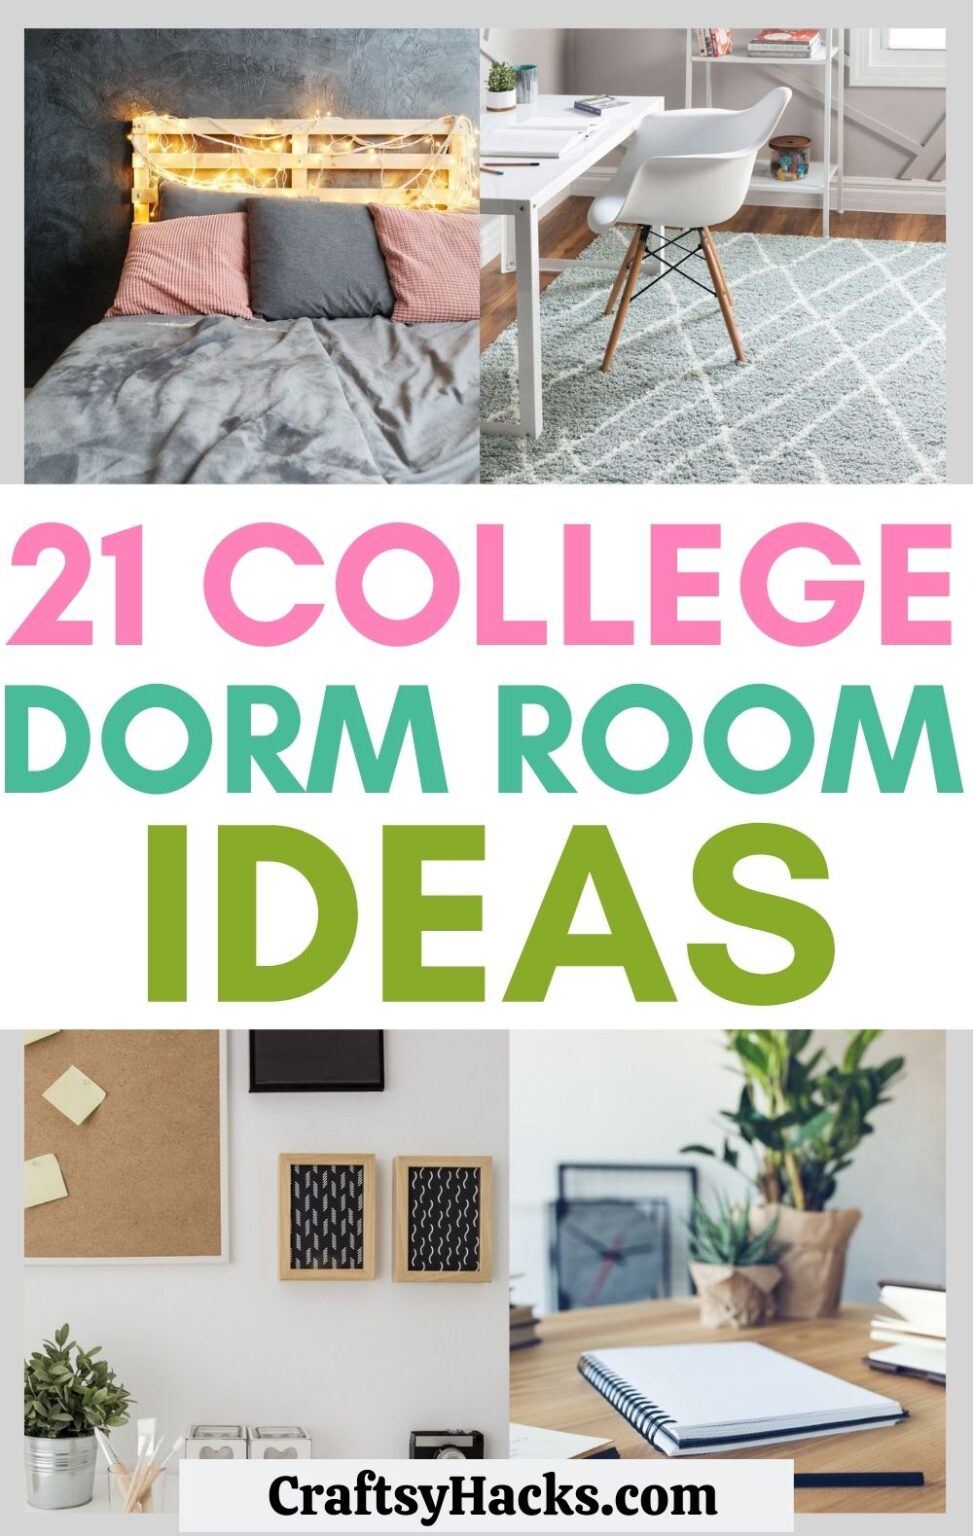 21 Genius College Dorm Room Ideas - Craftsy Hacks